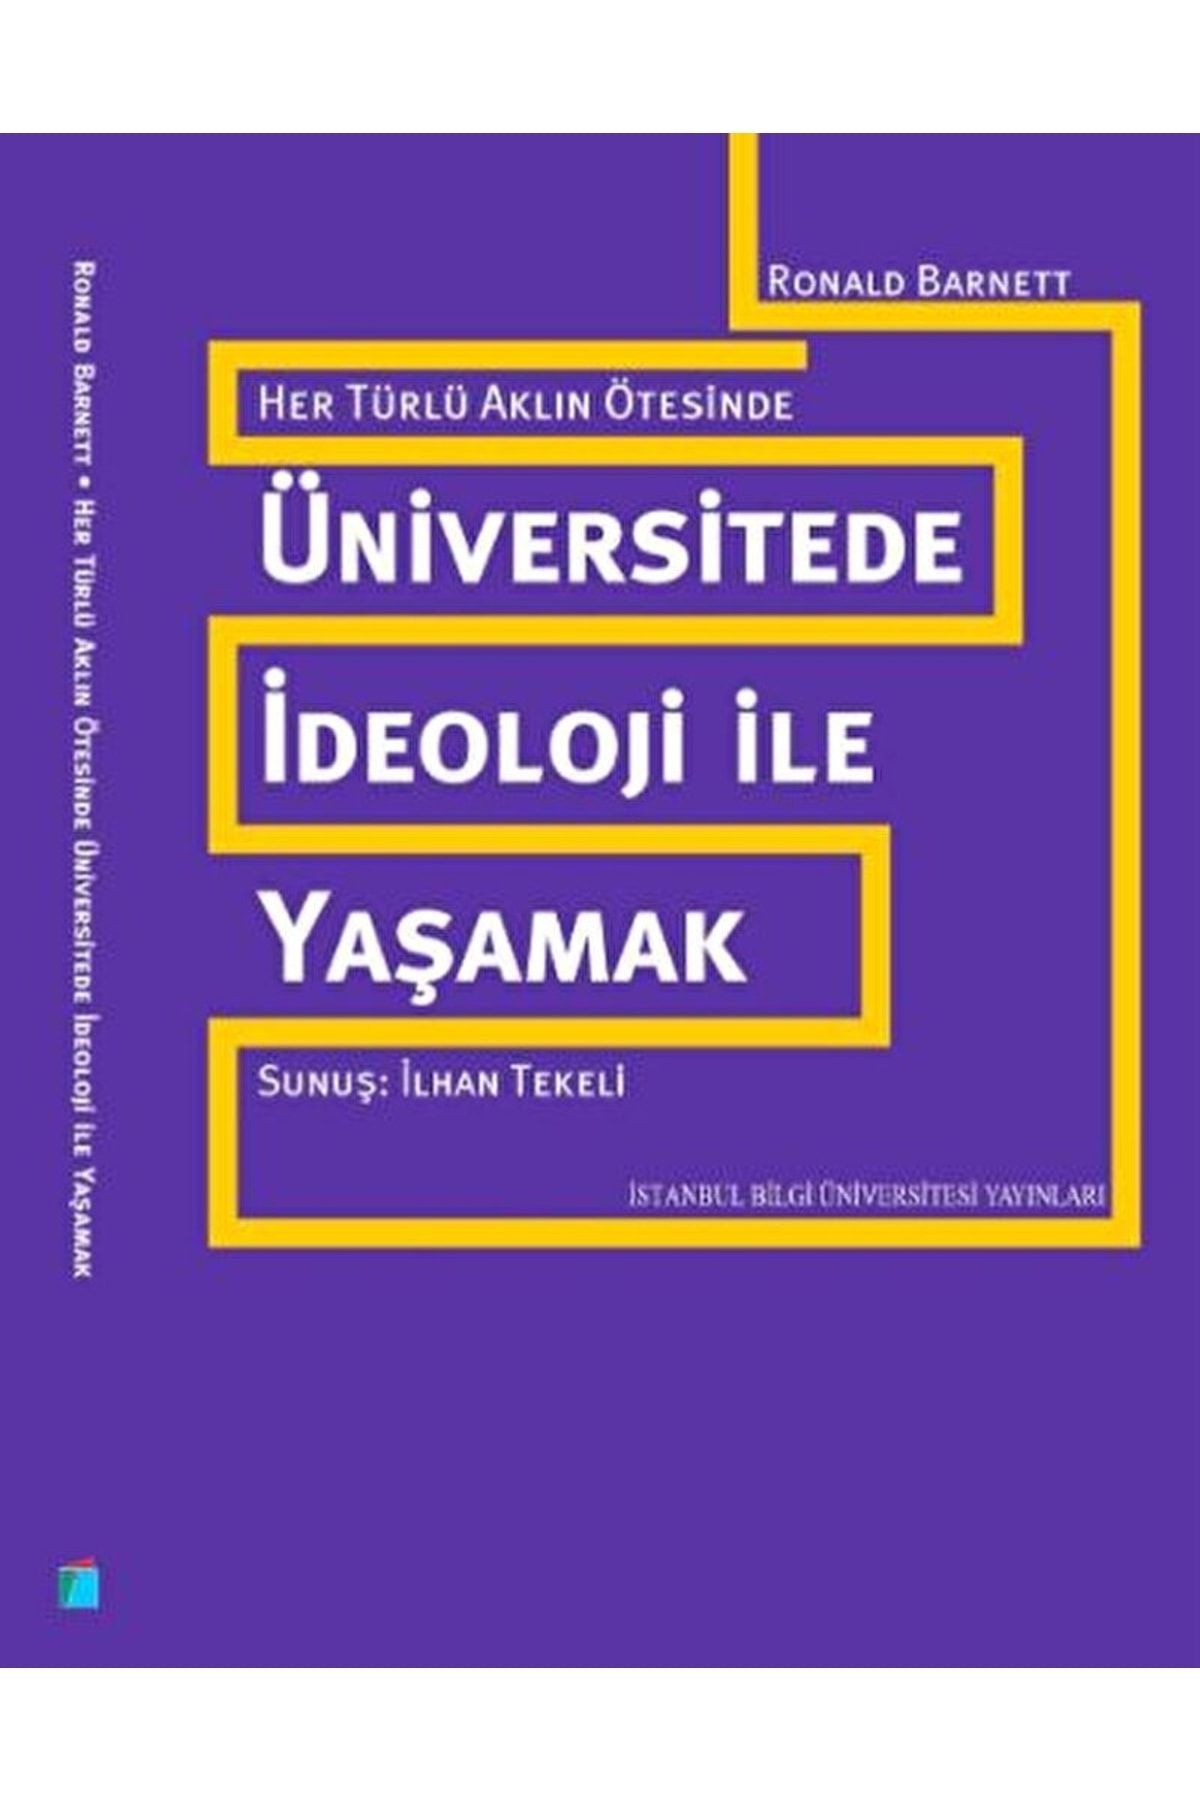 İstanbul Bilgi Üniversitesi Yayınları Her Türlü Aklın Ötesinde: Üniversitede Ideoloji Ile Yaşamak / 9786053990598